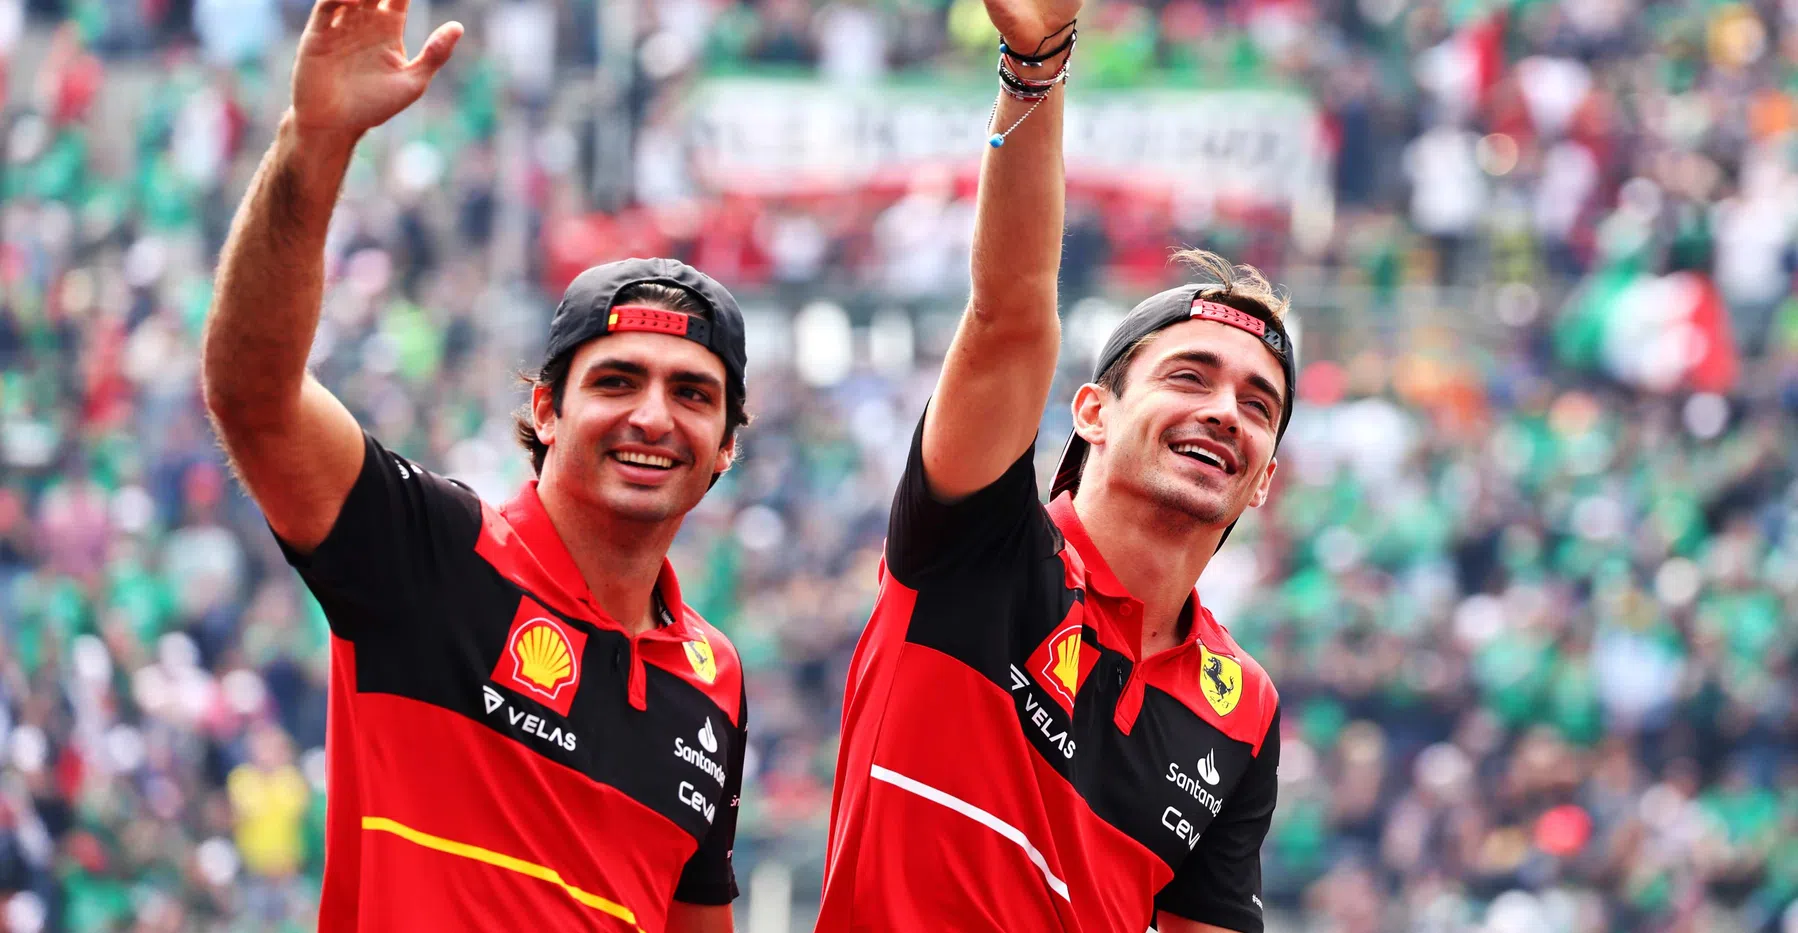 Leclerc e Sainz accennano alla nuova livrea Ferrari